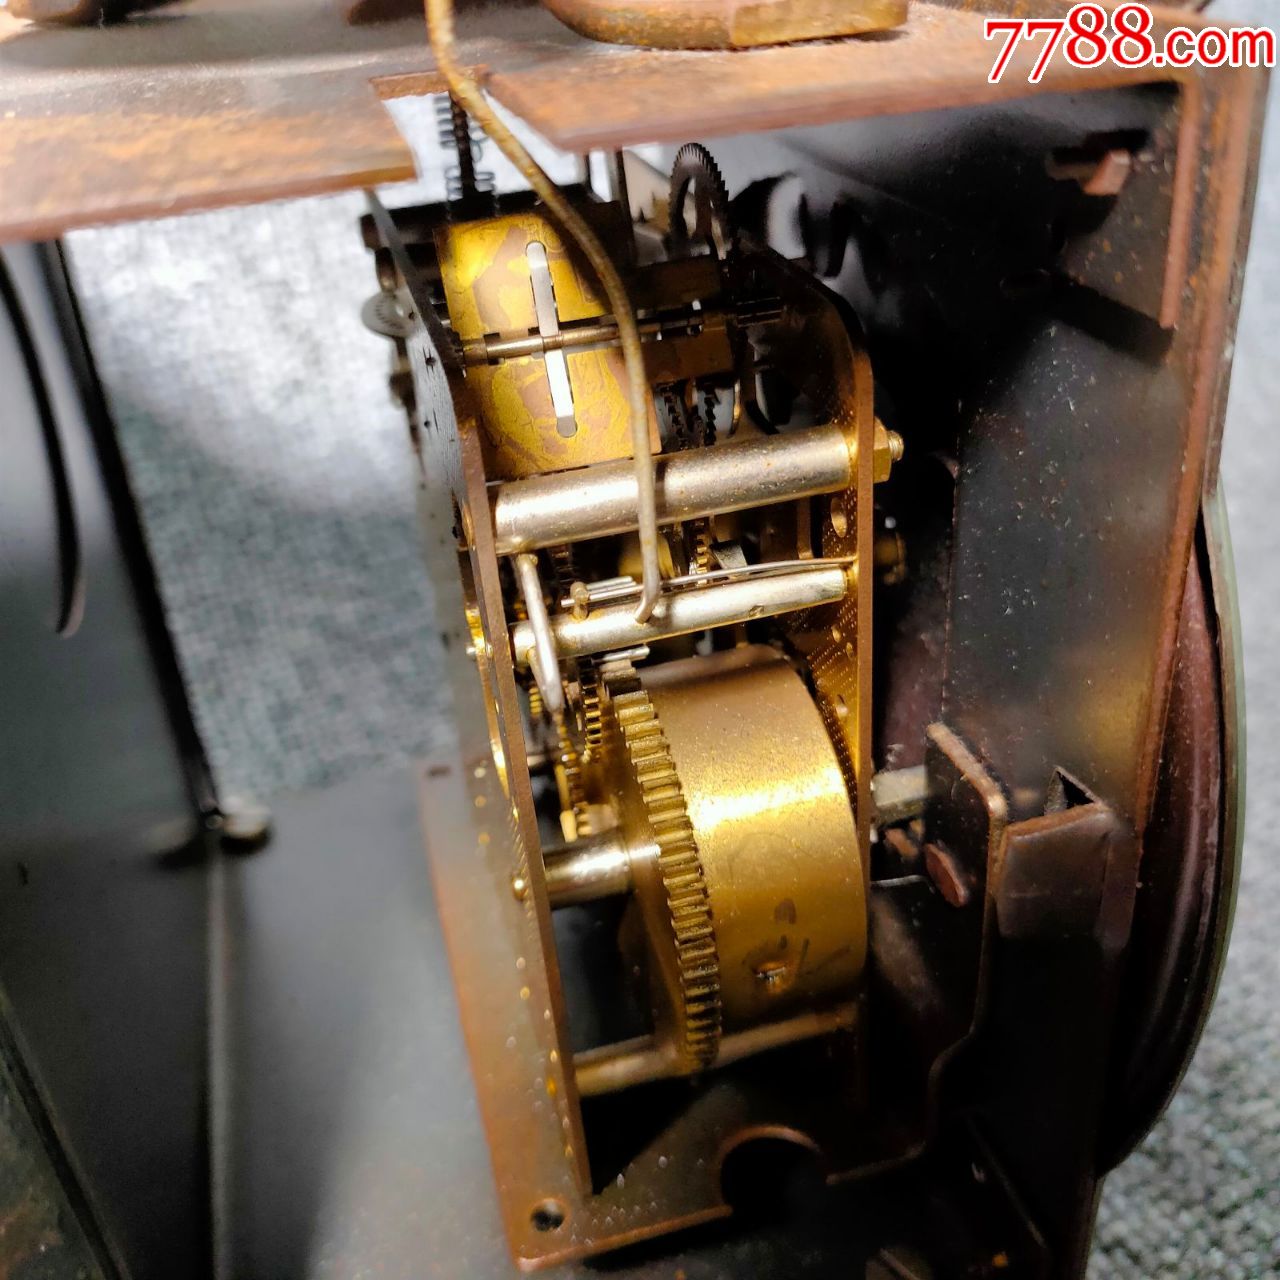 20世纪早期西洋古董发条座钟机械钟表壁炉钟稀有金属壳机械正常